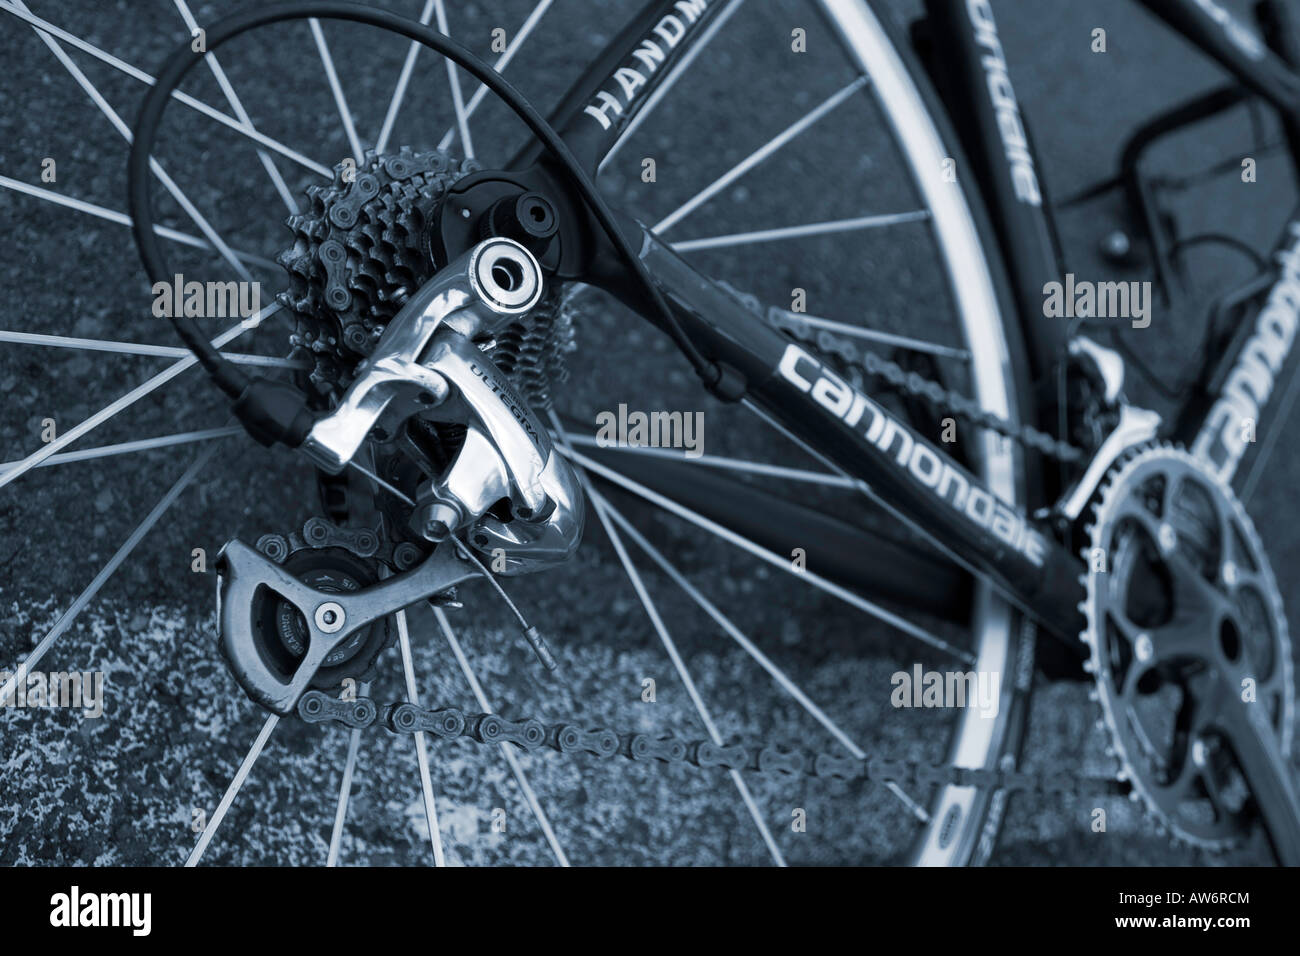 Ein Rennrad, liegend auf der einen Seite, Nahaufnahme des Schaltwerks und  Antrieb Stockfotografie - Alamy